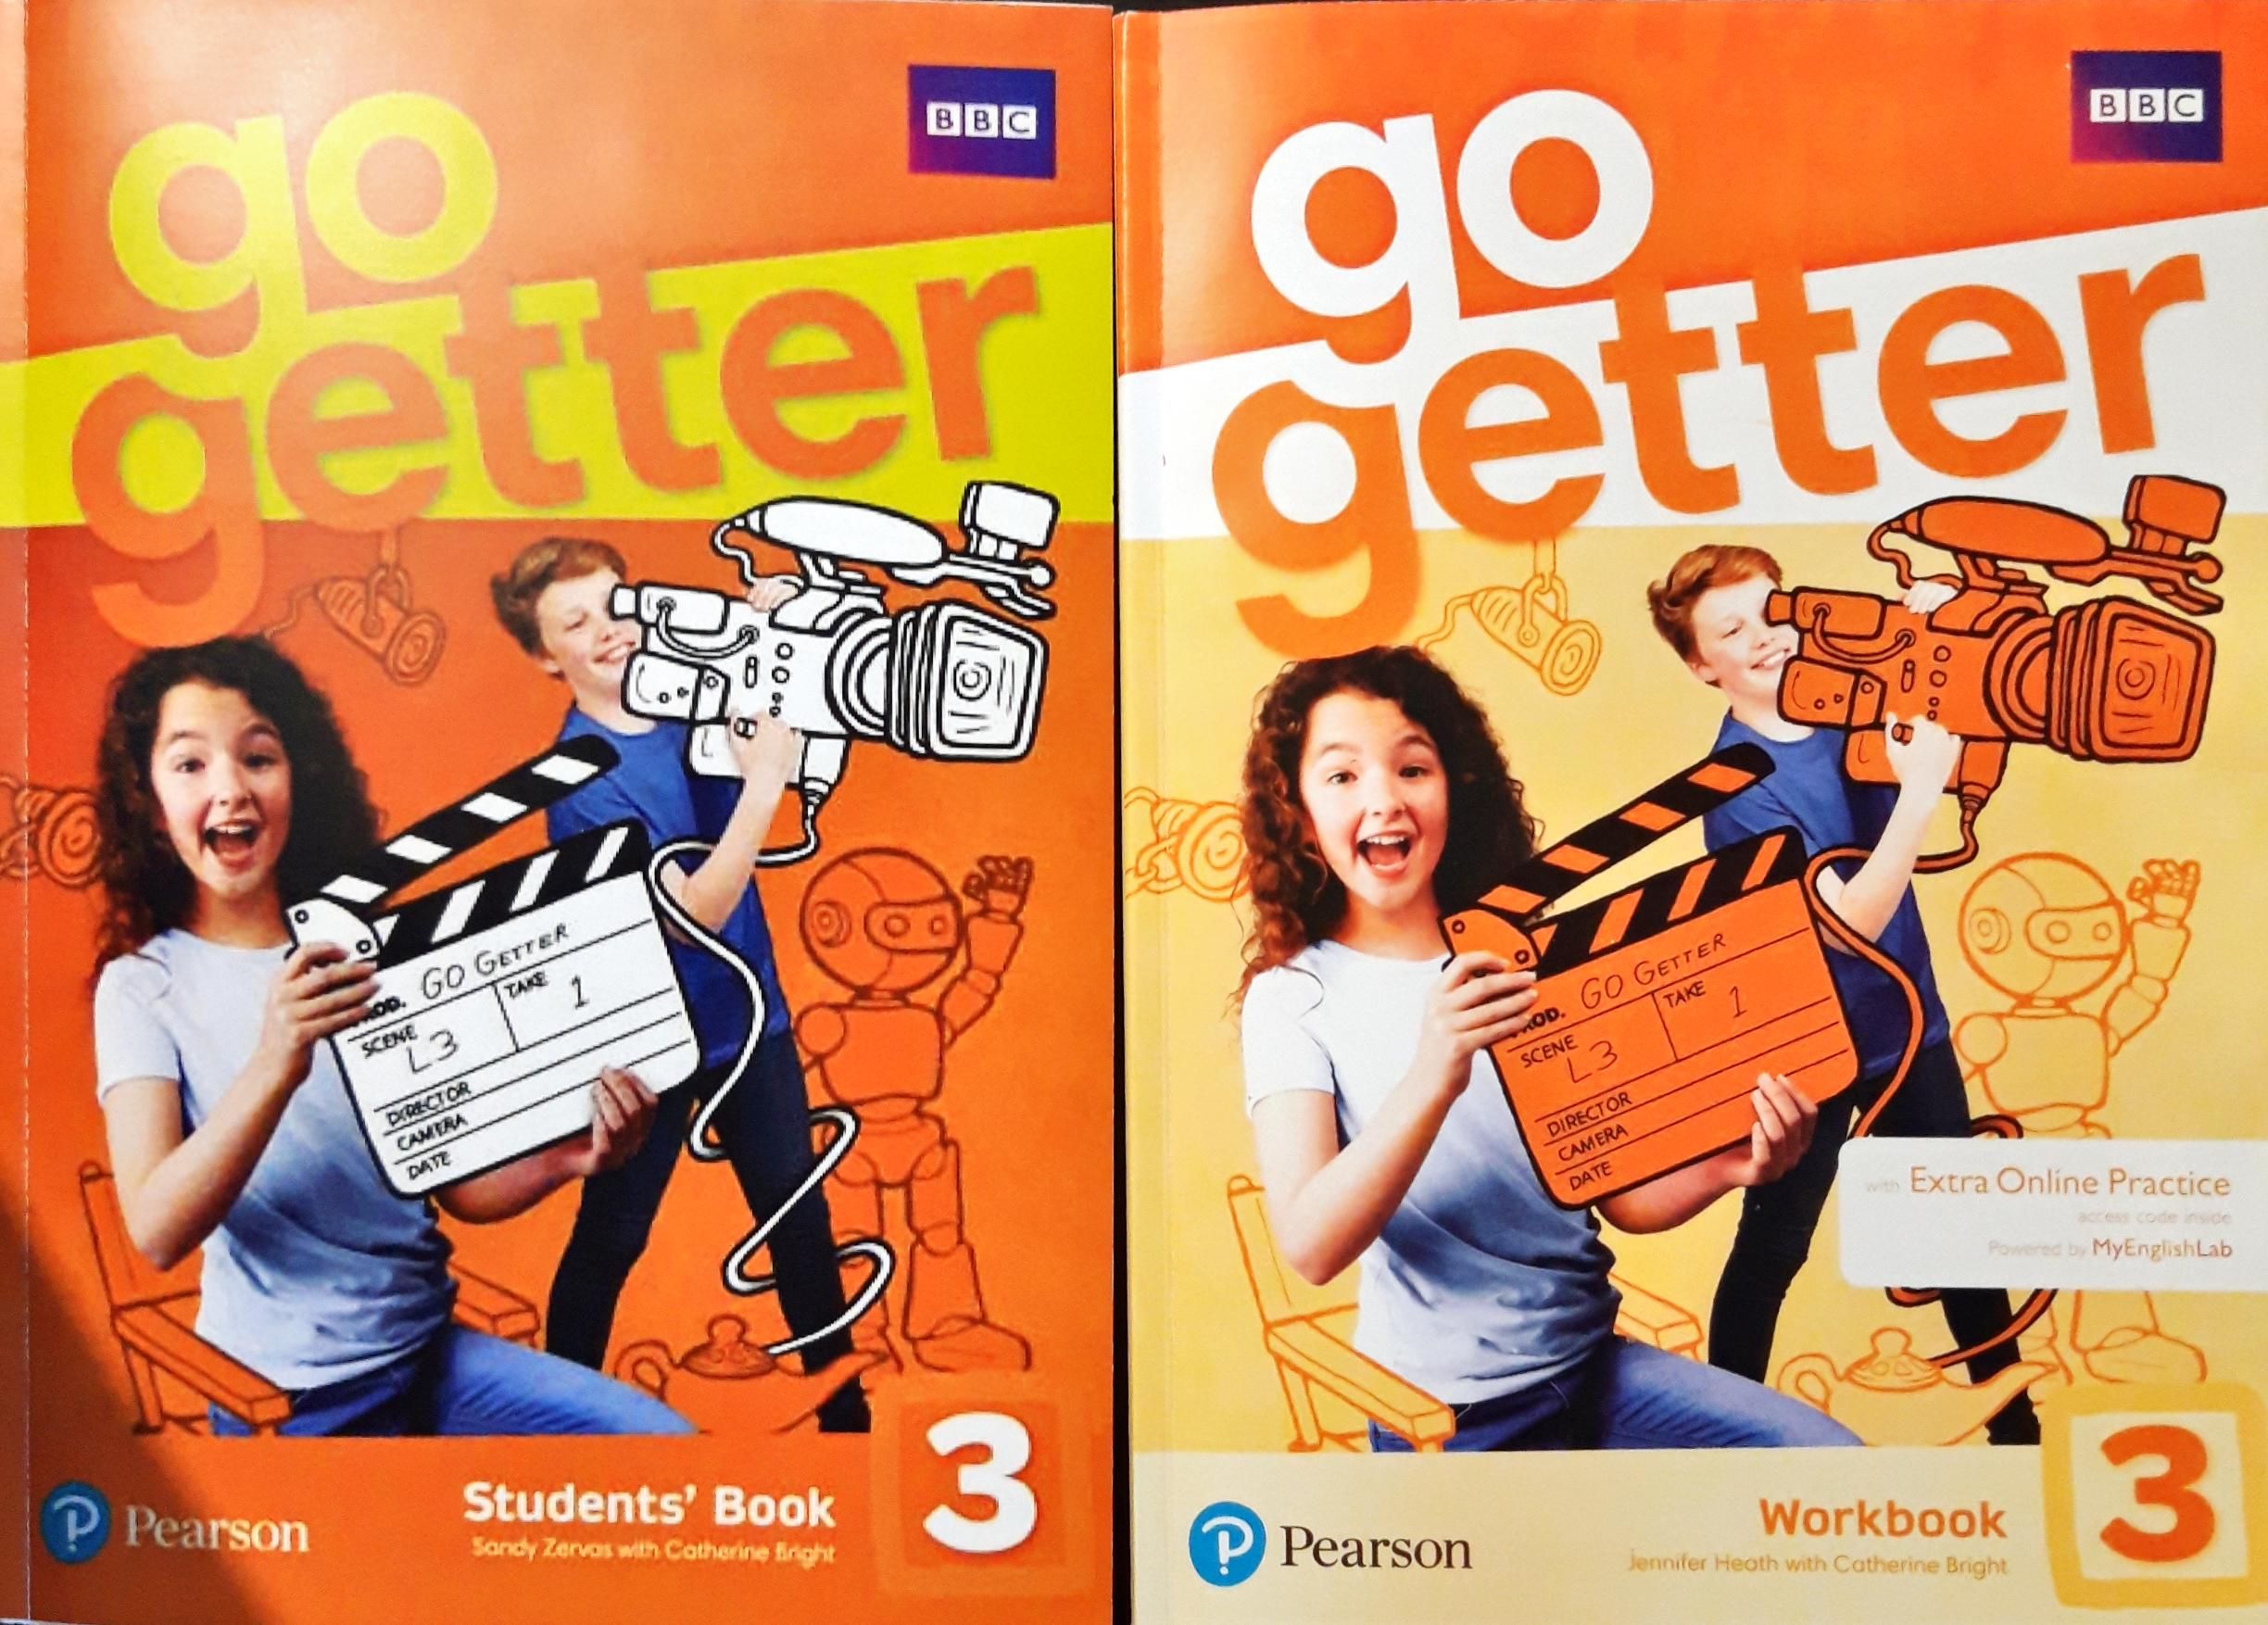 Go getter 3 bbc. Рабочая тетрадь go Getter 1 Pearson. Учебник go Getter 3. Учебник go Getter 1. Pearson go Getter 3 Workbook.